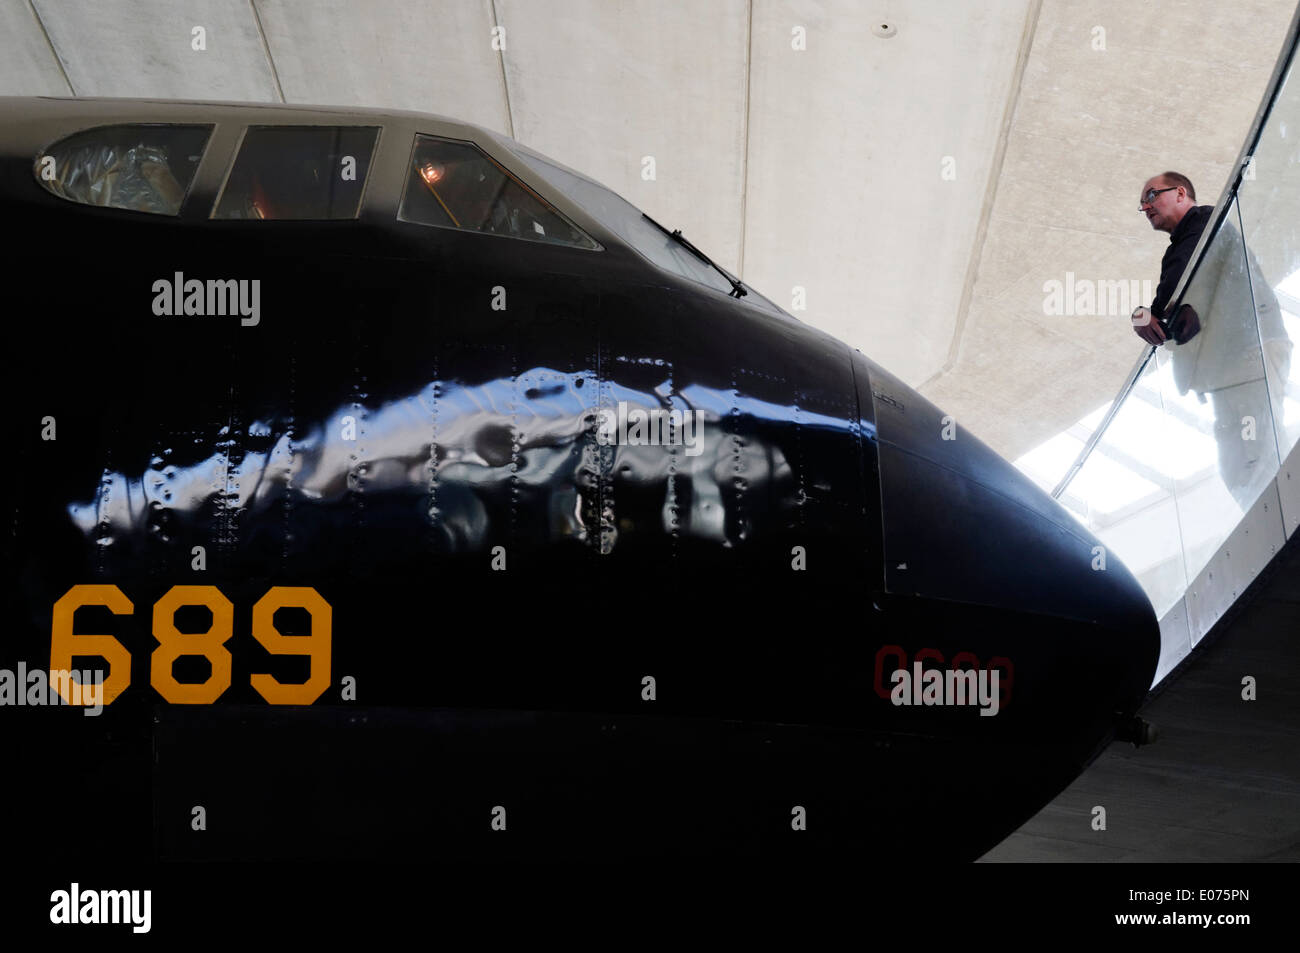 Un homme à la recherche de l'énorme Boeing B-52 Stratofortress exposé au Musée de l'air de Duxford Banque D'Images